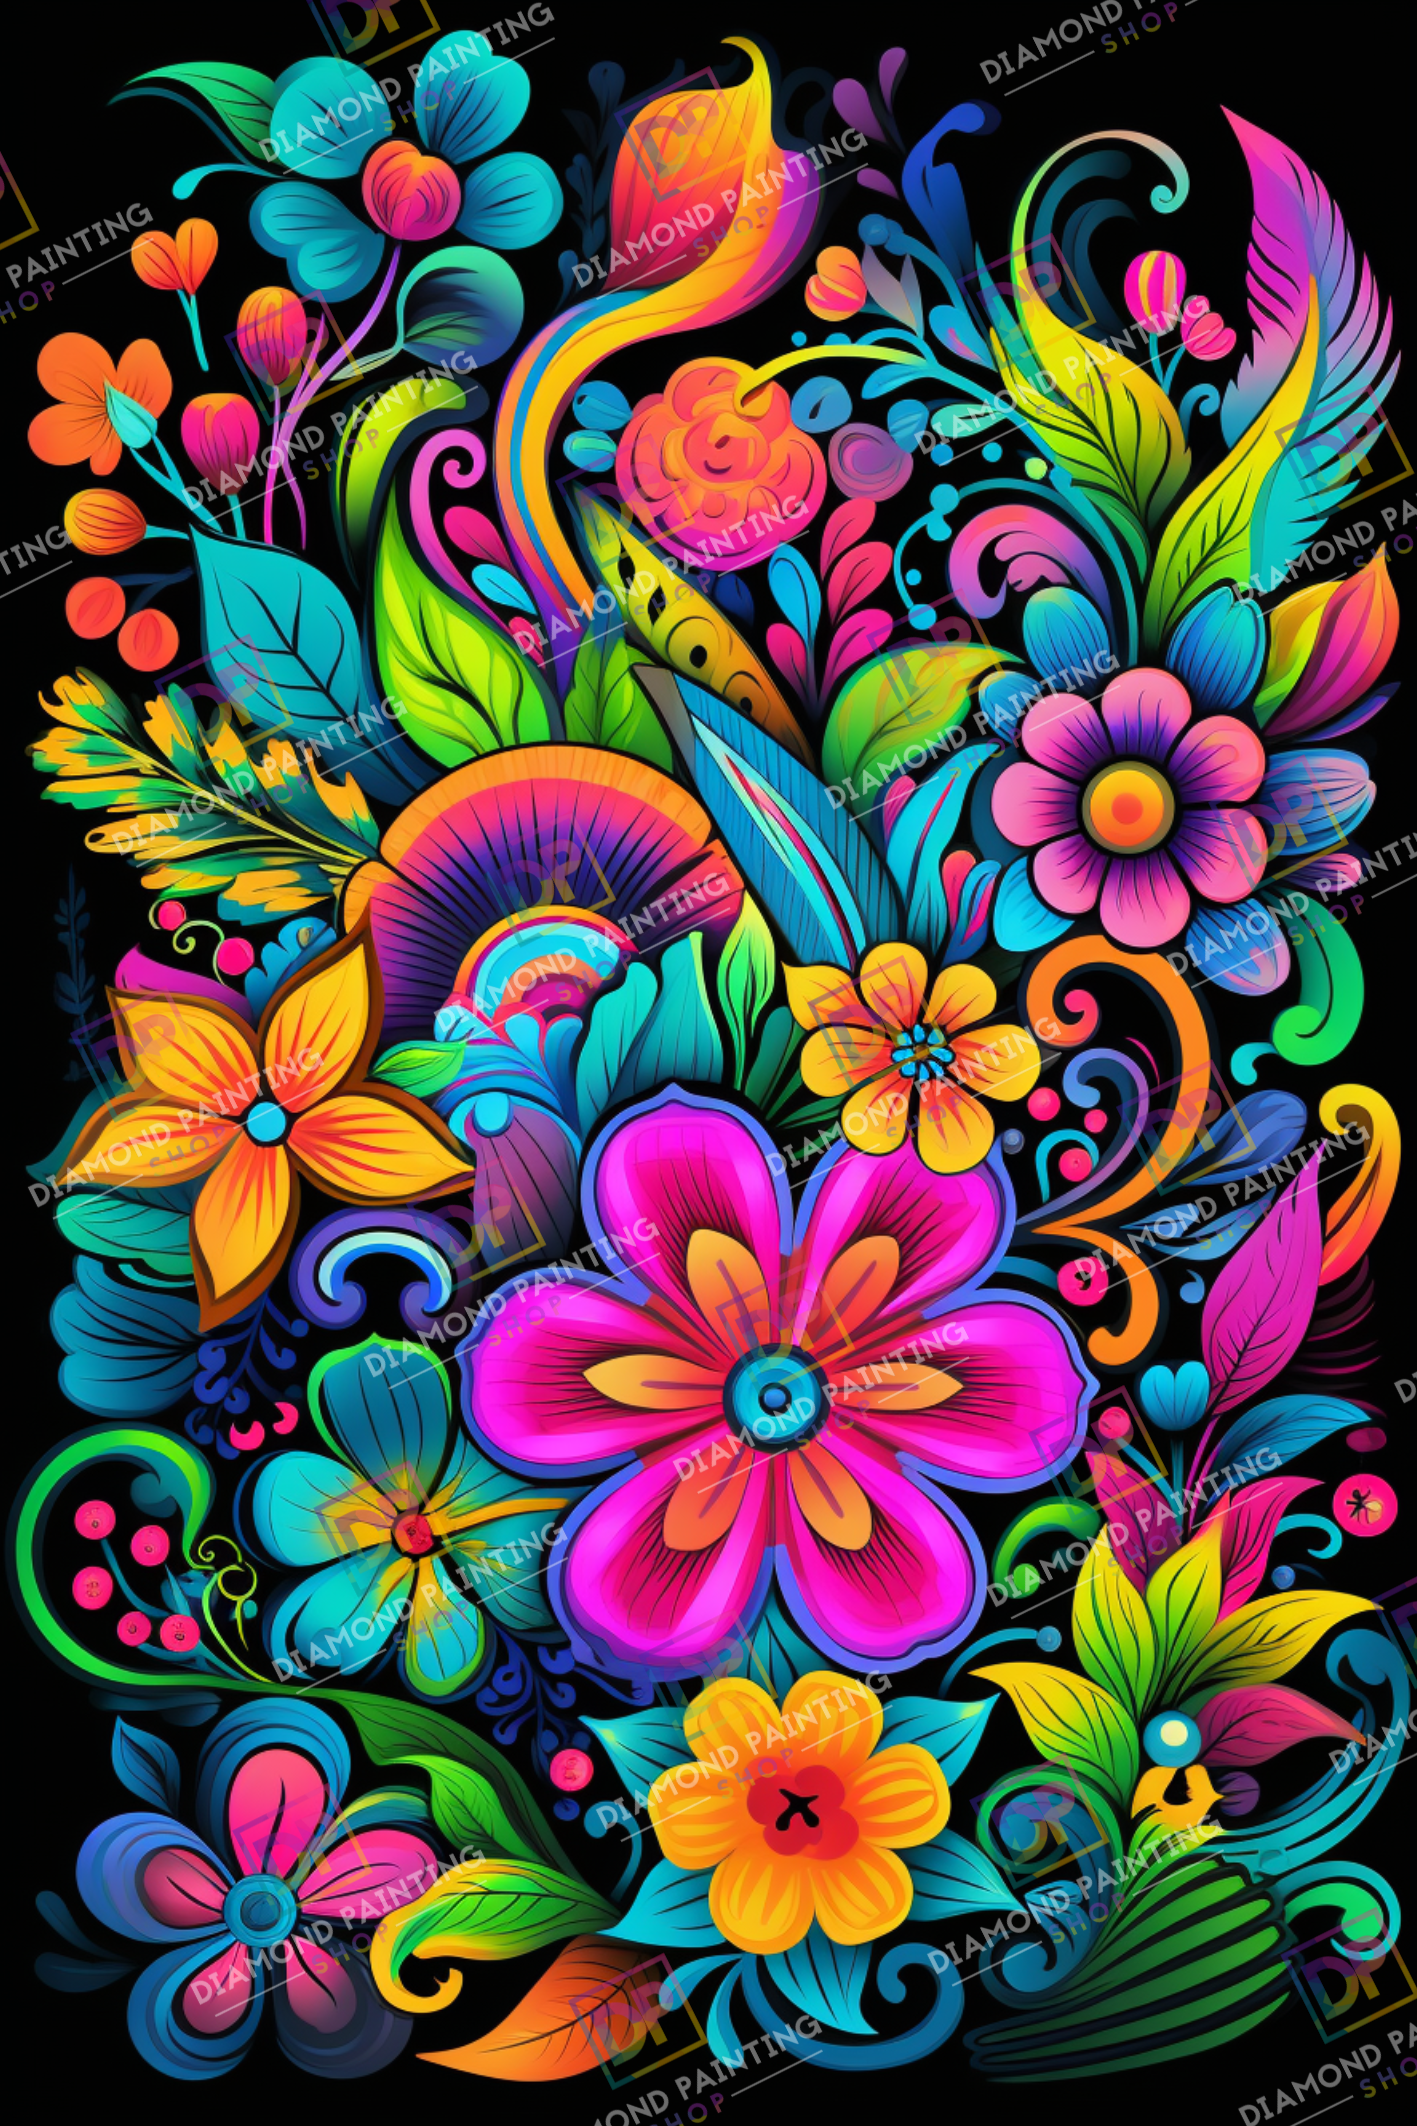 Zauberhaftes Blütenmeer mit AB Farben